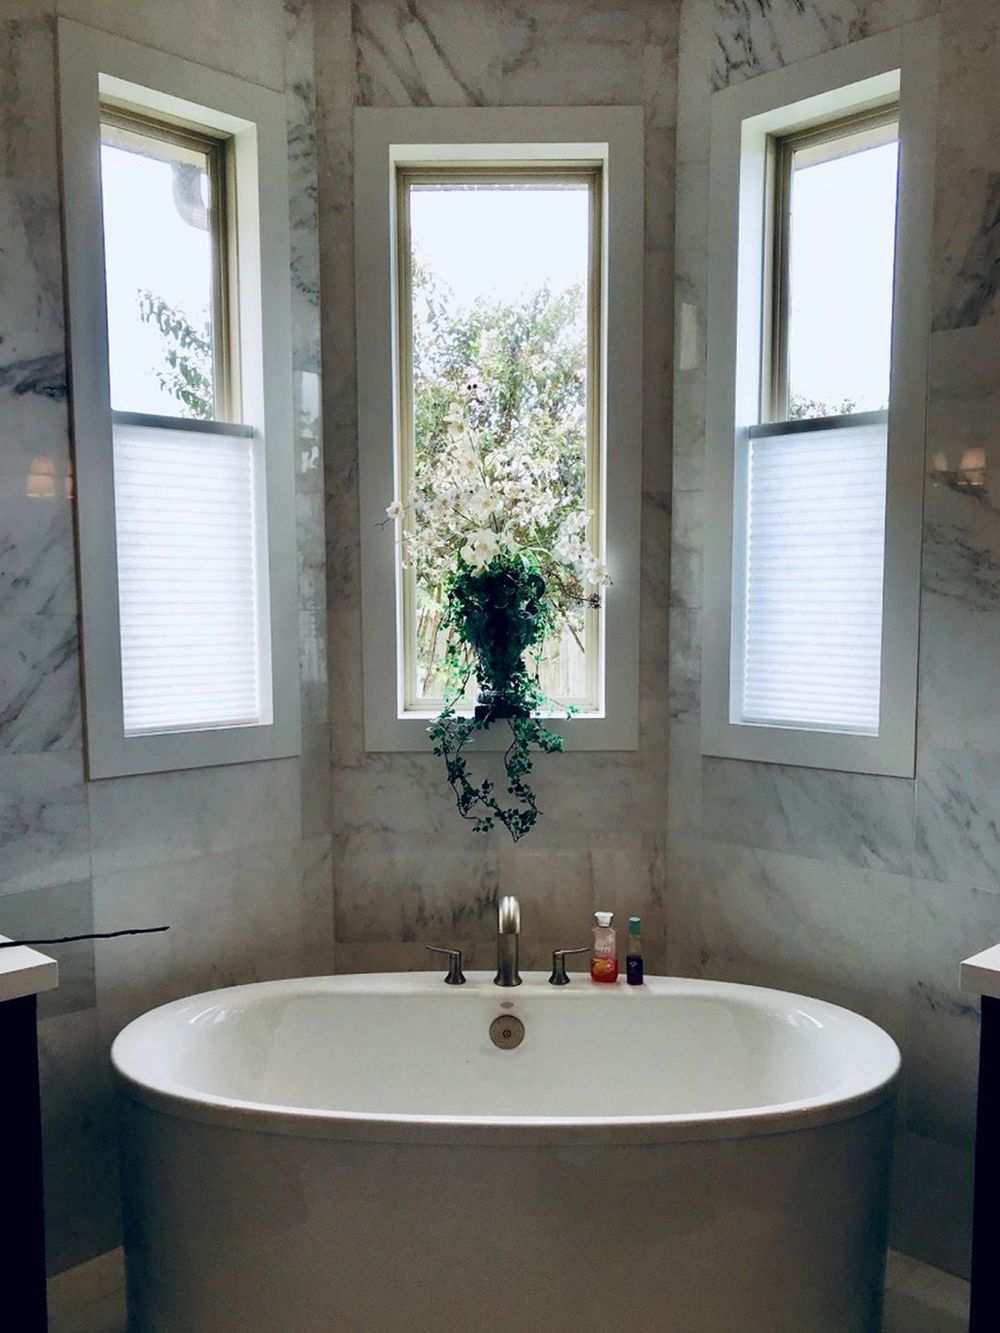 重点关注这个主浴室的独立深泡浴缸，周围环绕着华丽的大理石瓷砖墙。